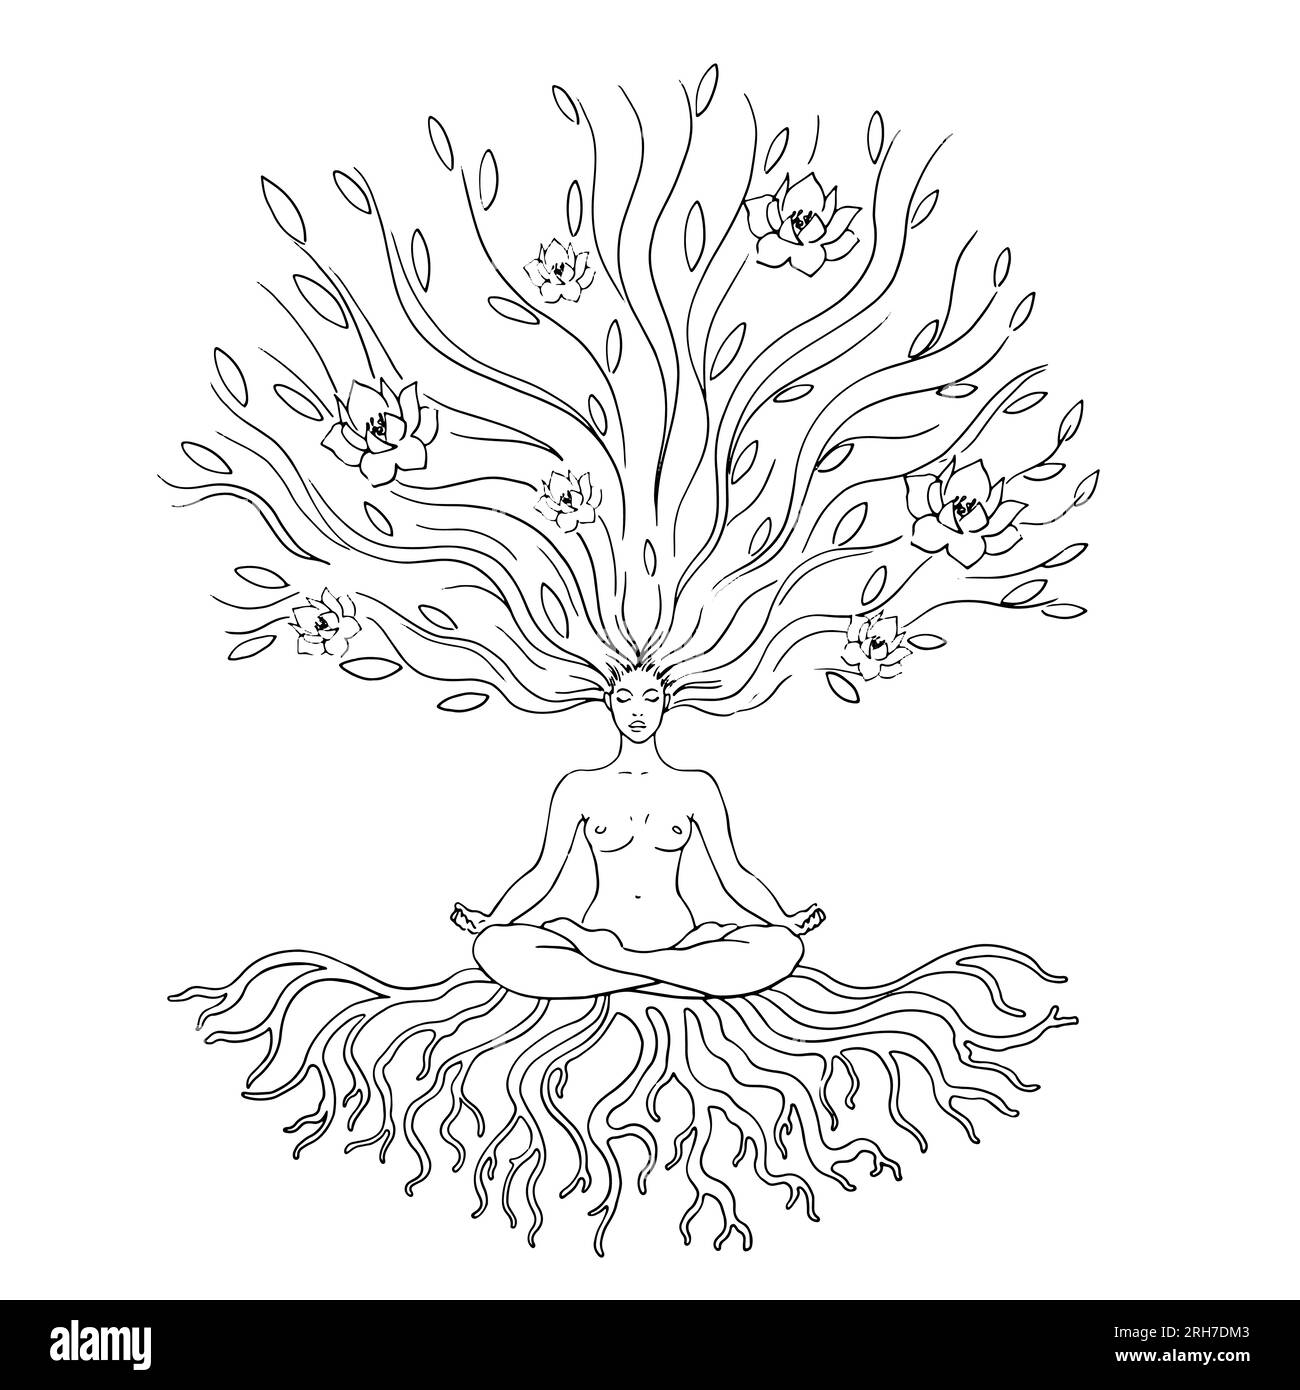 Une femme dans la position du lotus est engagée dans le yoga, les pratiques spirituelles. Arbre comme symbole de la vie, racines et branches avec des fleurs. Fusion avec la nature, la féminité, le symbolisme. Pour les logos, emblèmes, etc Illustration vectorielle Illustration de Vecteur